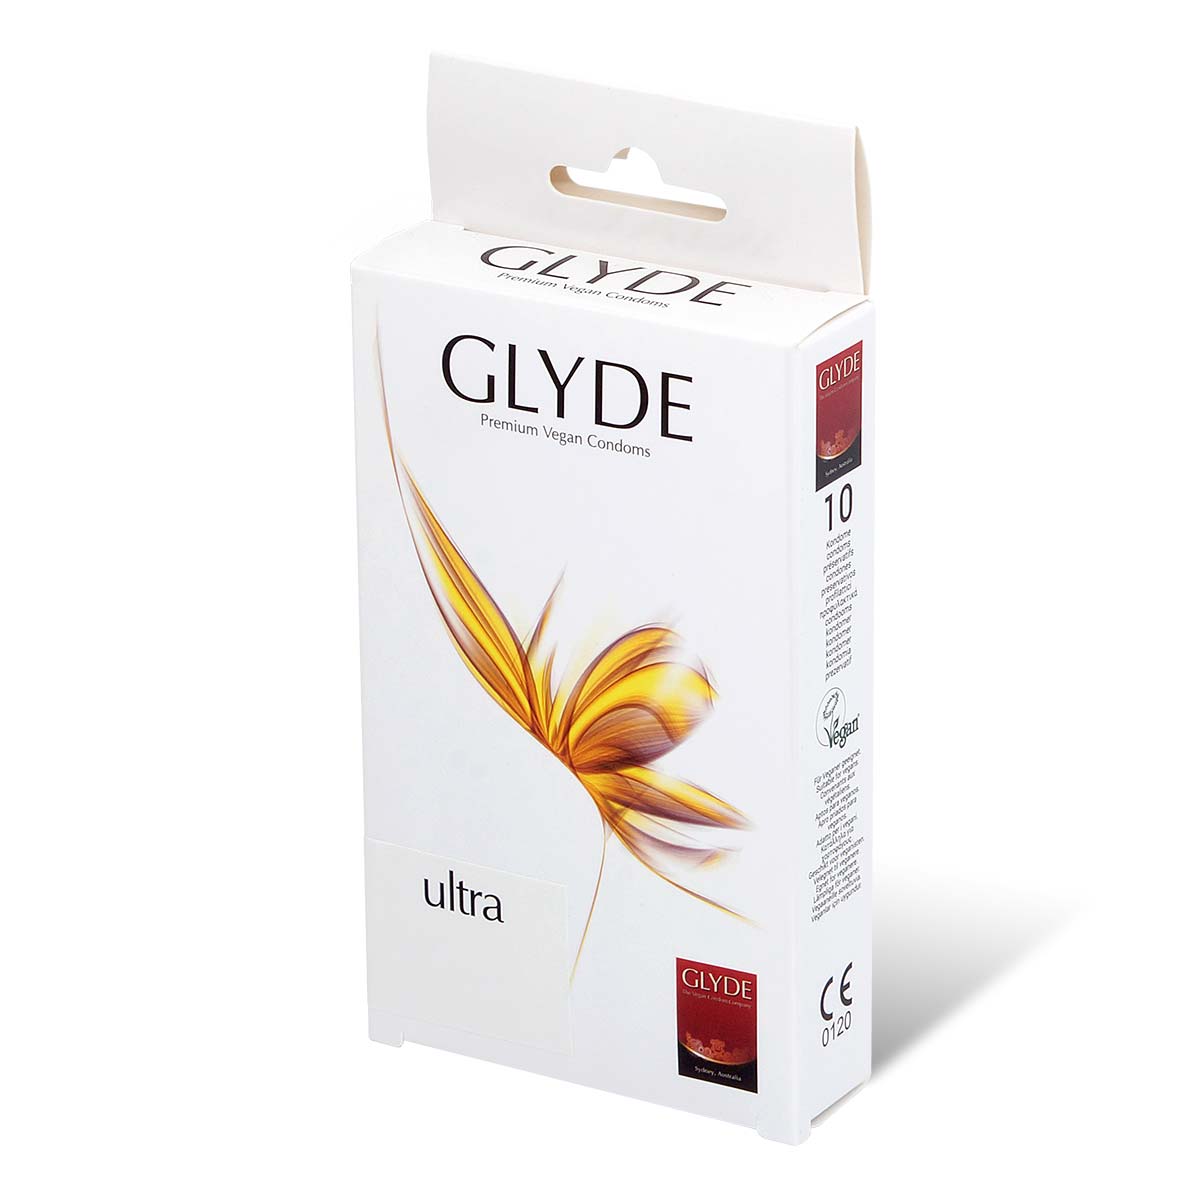 Glyde 格蕾迪 素食主义安全套 超薄 10 片装 乳胶安全套-p_1